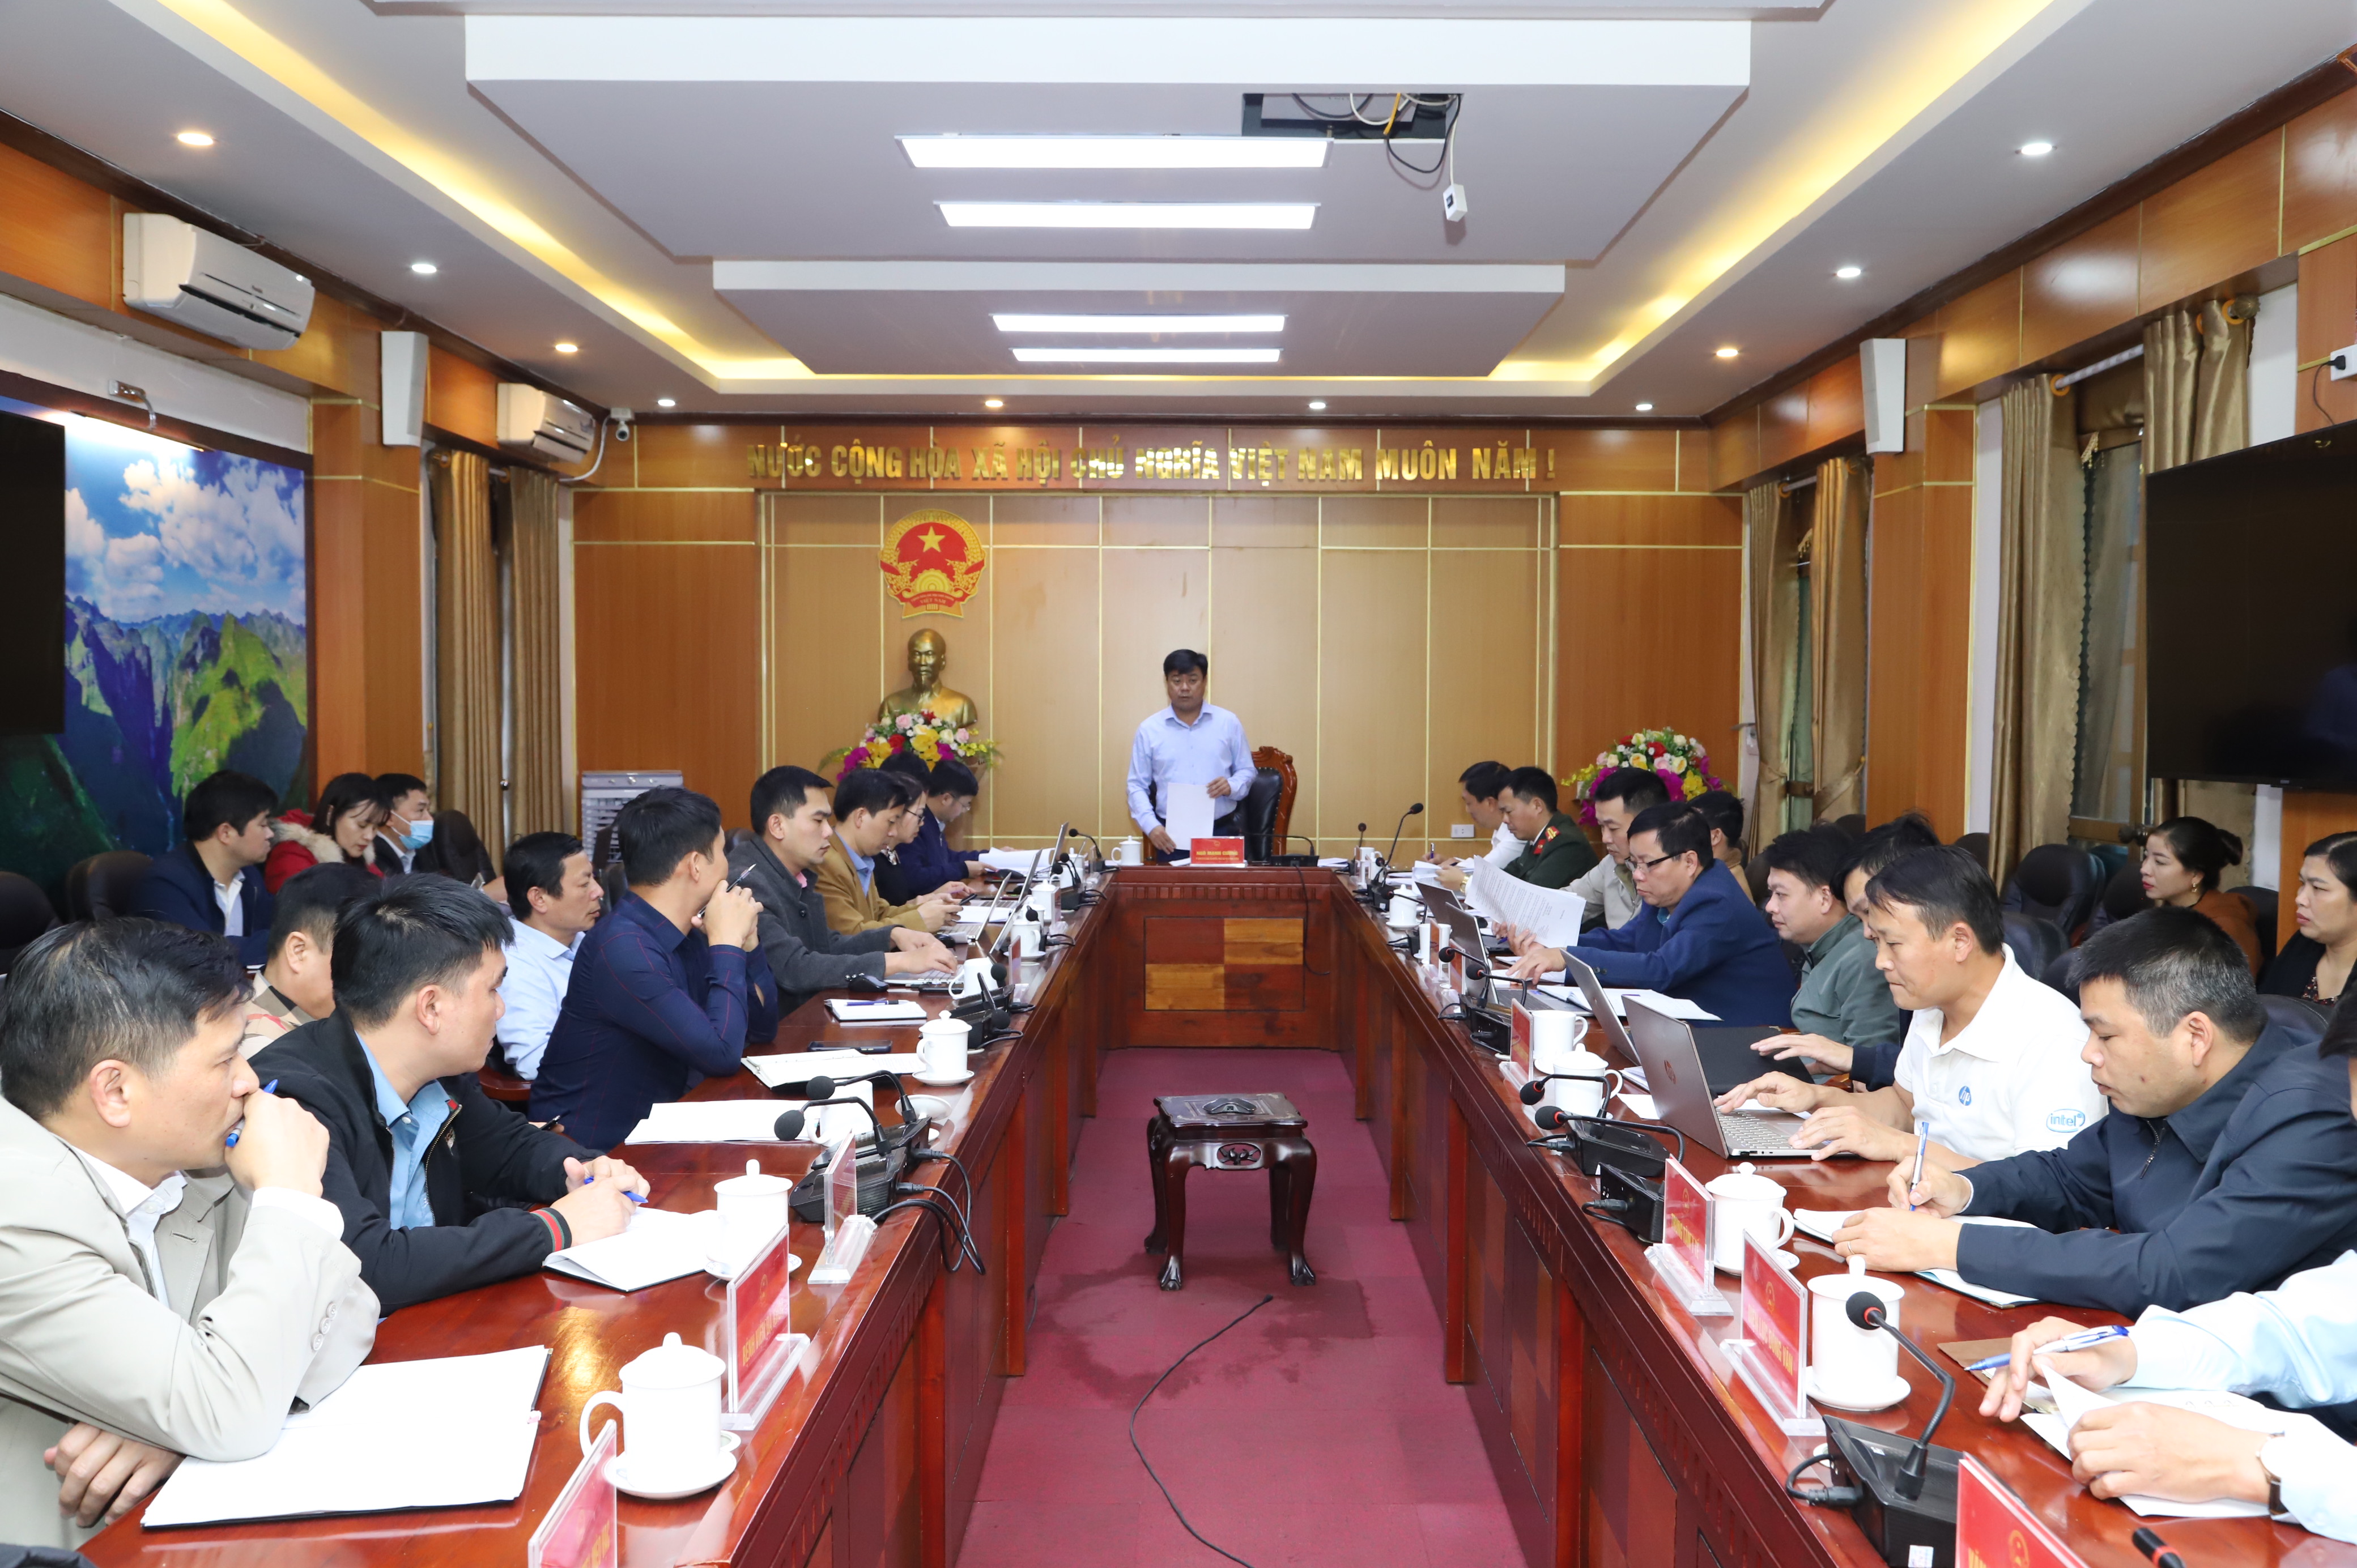 Đồng chí Ngô Mạnh Cường, Phó Chủ tịch UBND huyện Mèo Vạc phát biểu chỉ đạo tại cuộc họp